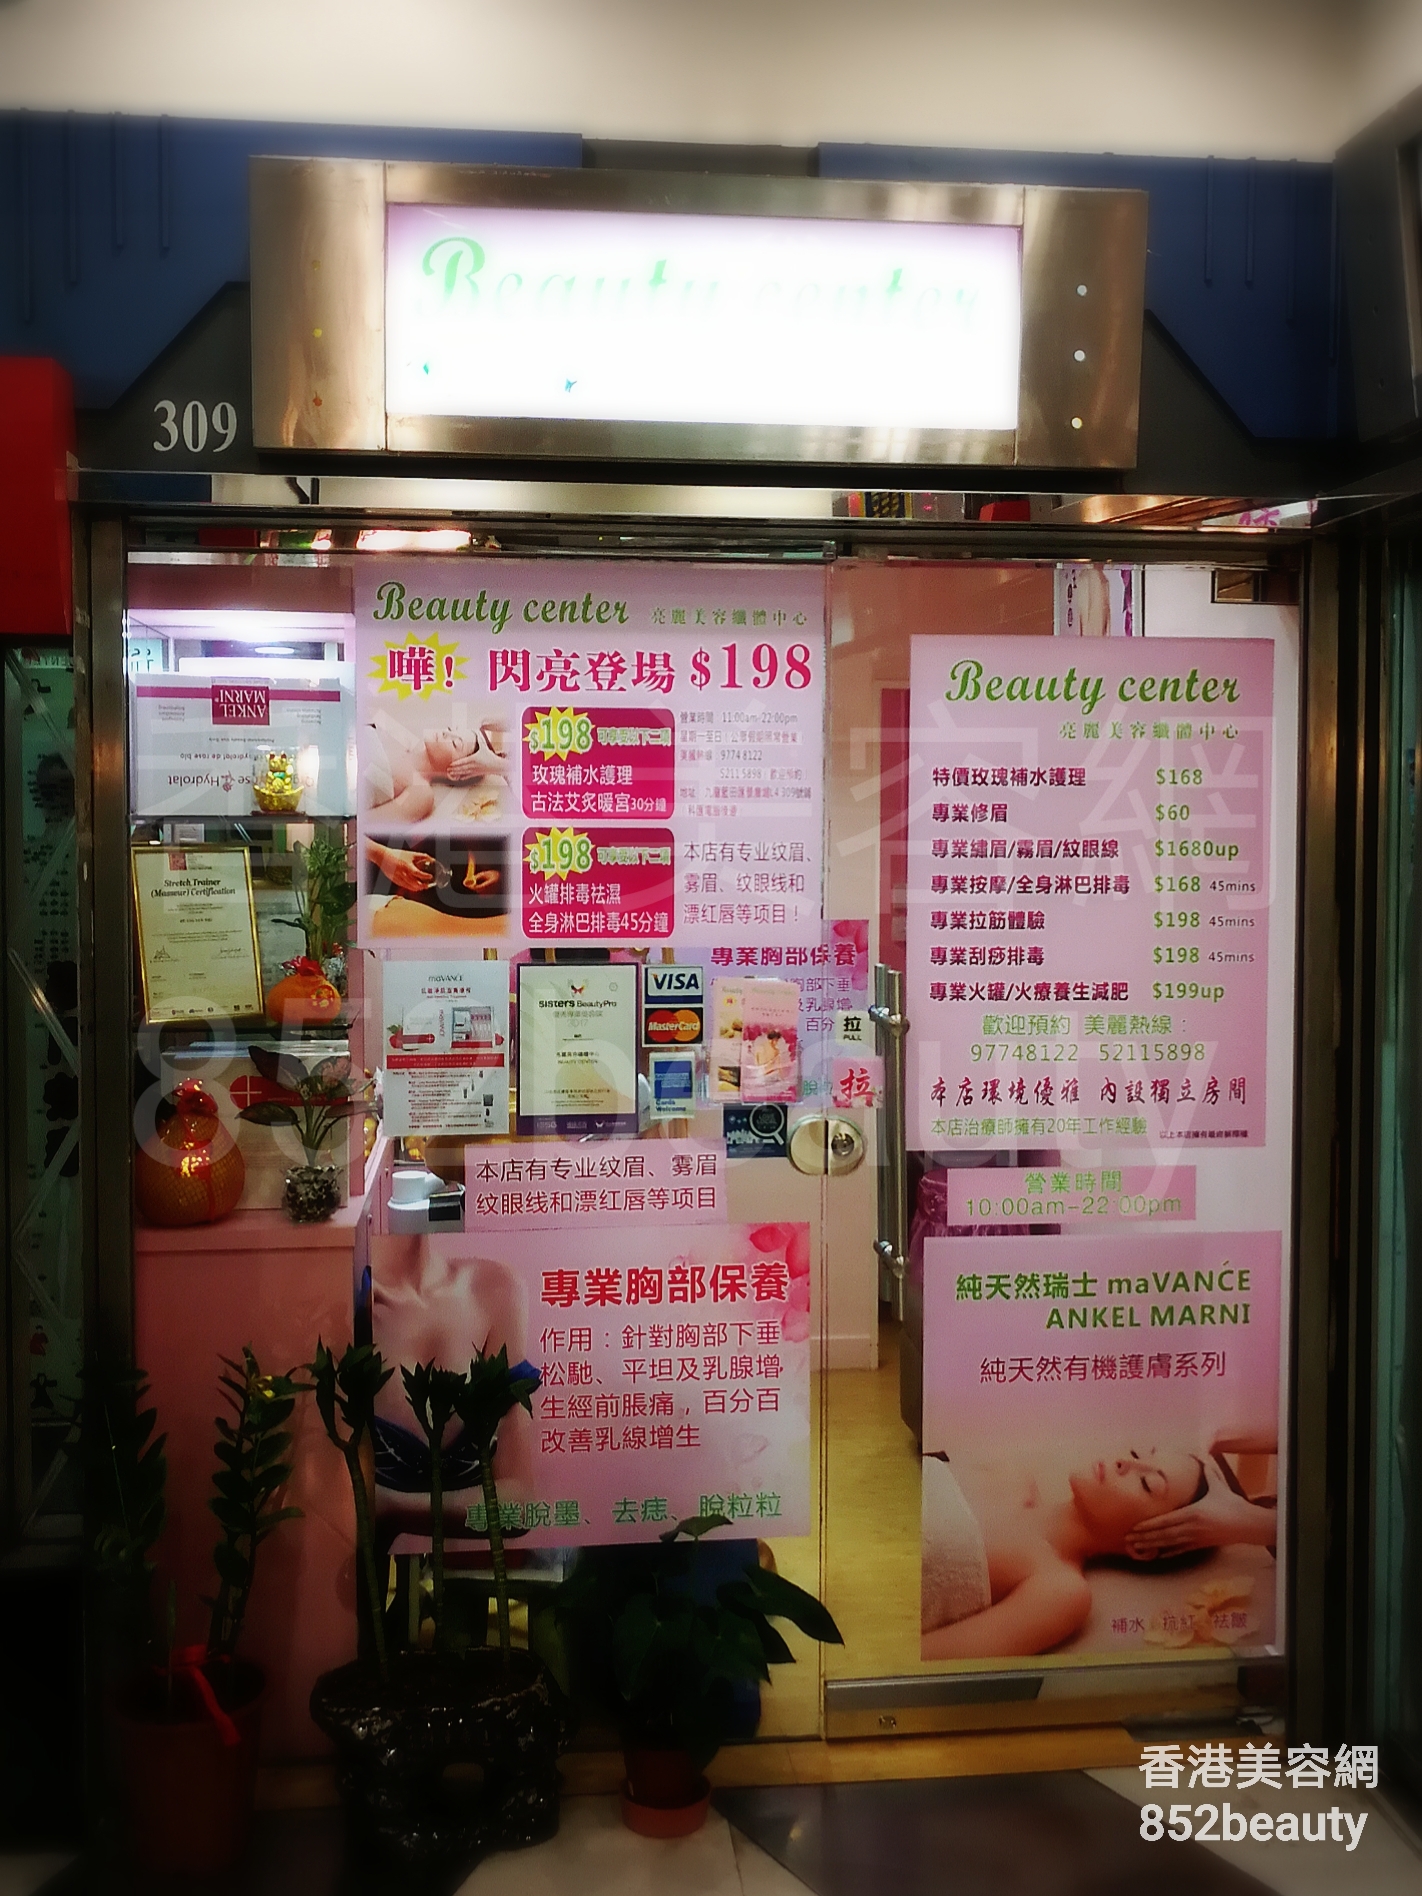 香港美容網 Hong Kong Beauty Salon 美容院 / 美容師: Beauty center 亮麗美容纖體中心